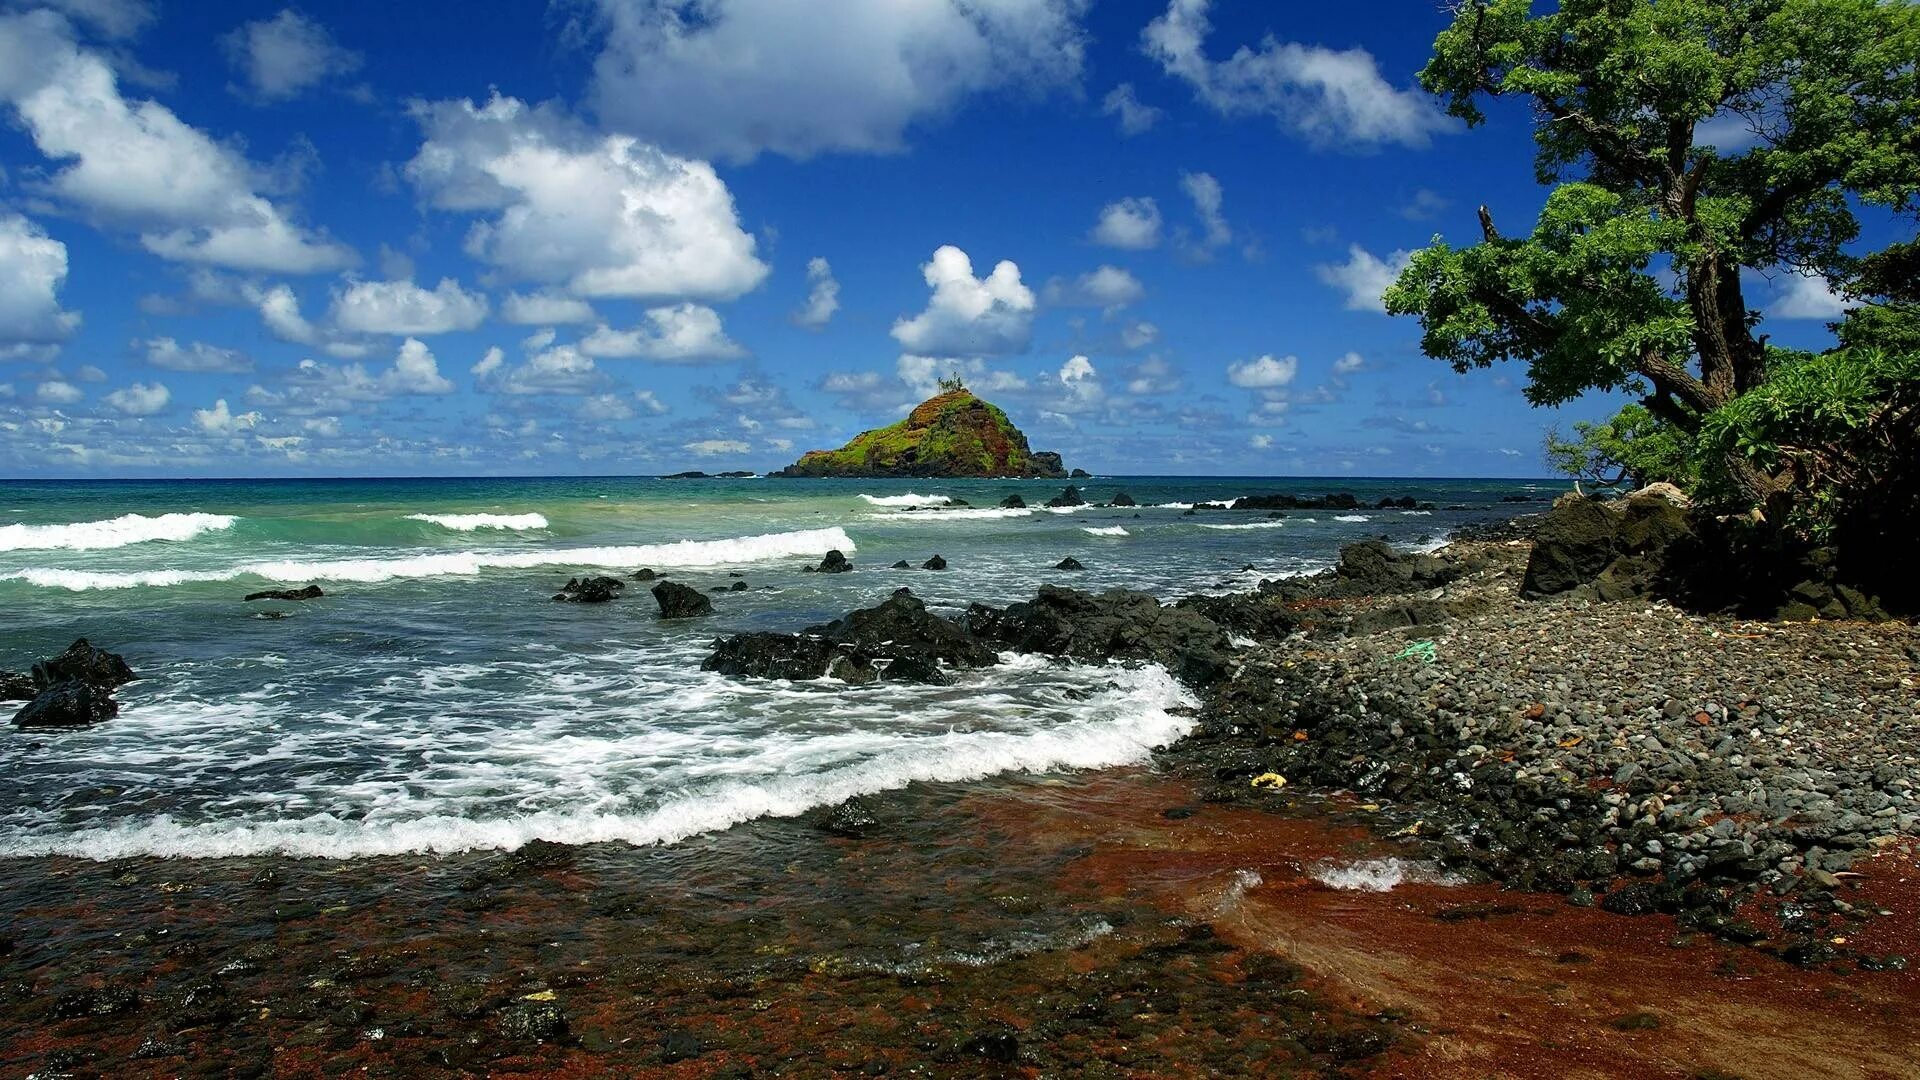 Экран island. Остров Мауи Гавайи. Карибское море Атлантический океан. Атлантический океан Куба. Тихий океан Гавайи.